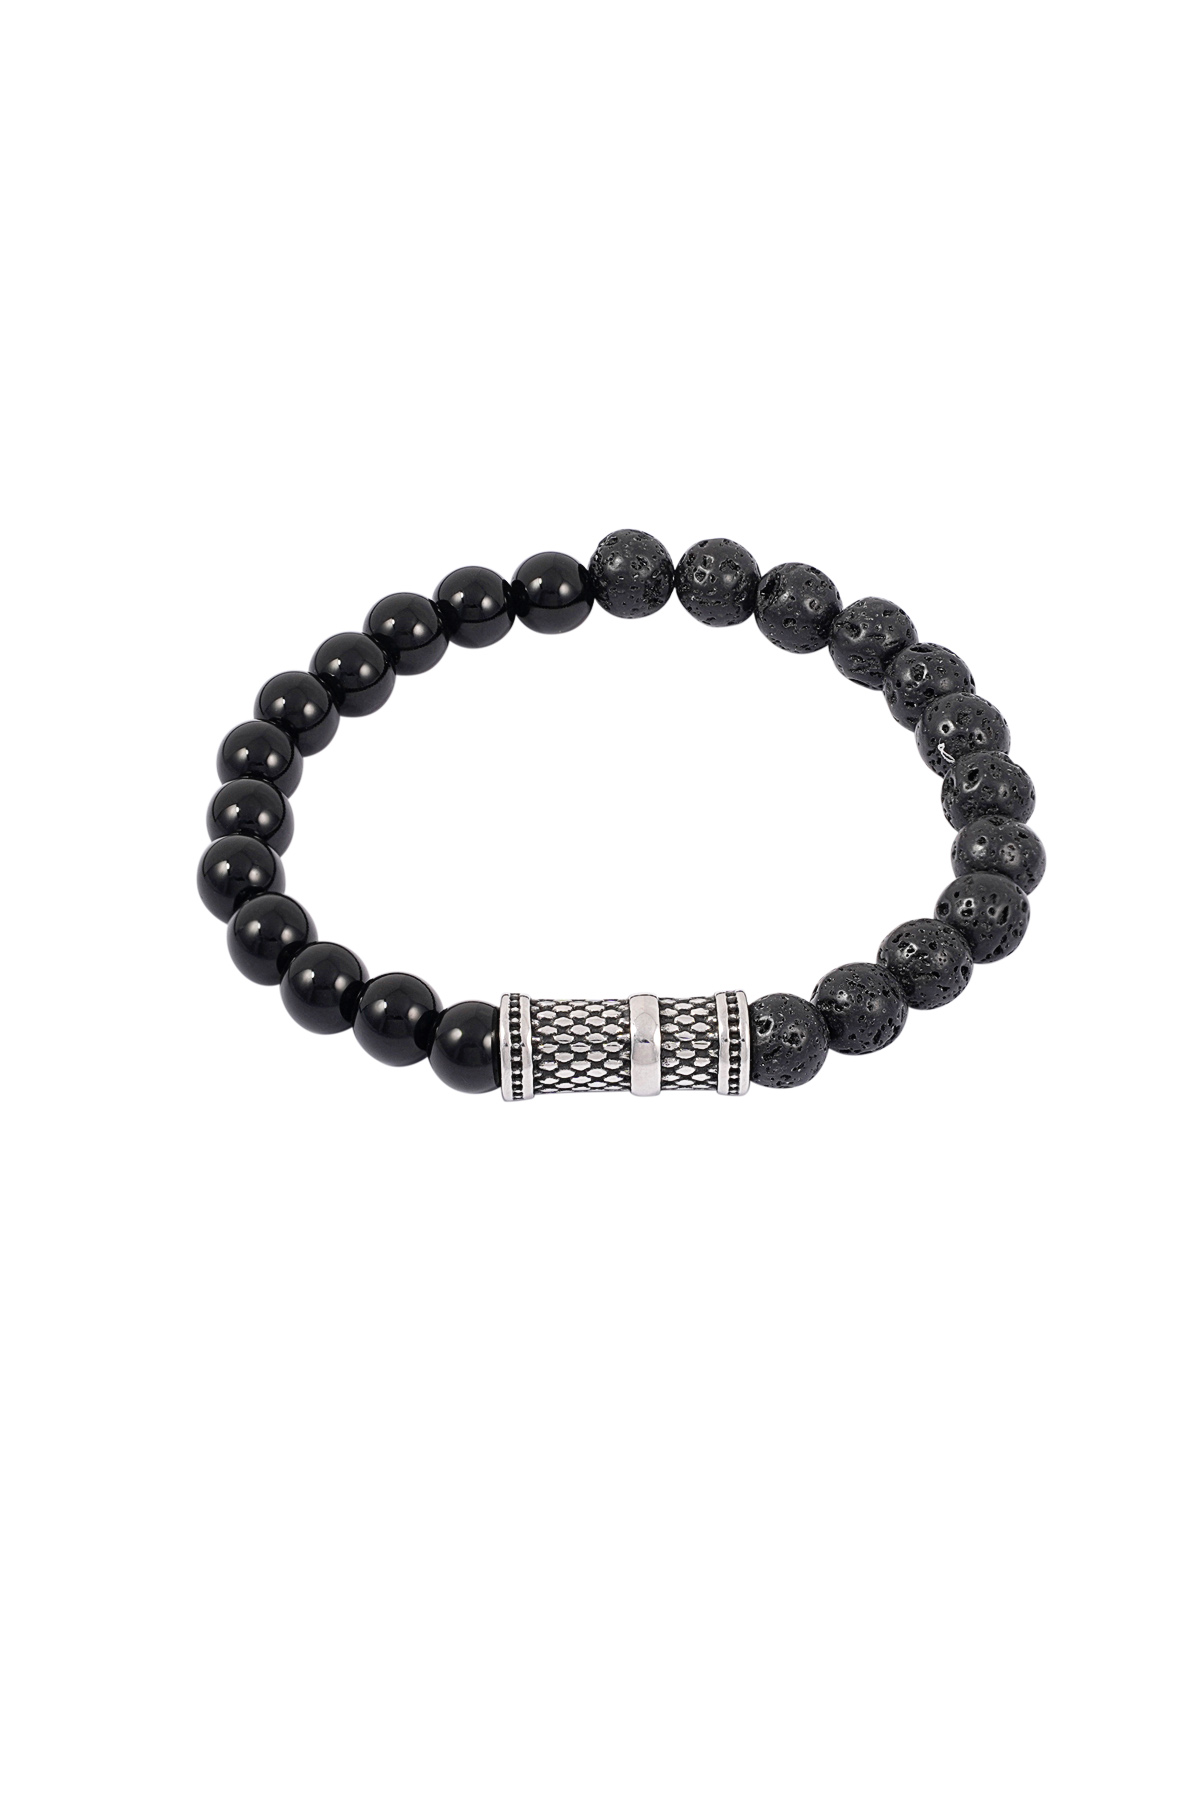 Bracelet cool pour hommes avec perles - noir/argent 